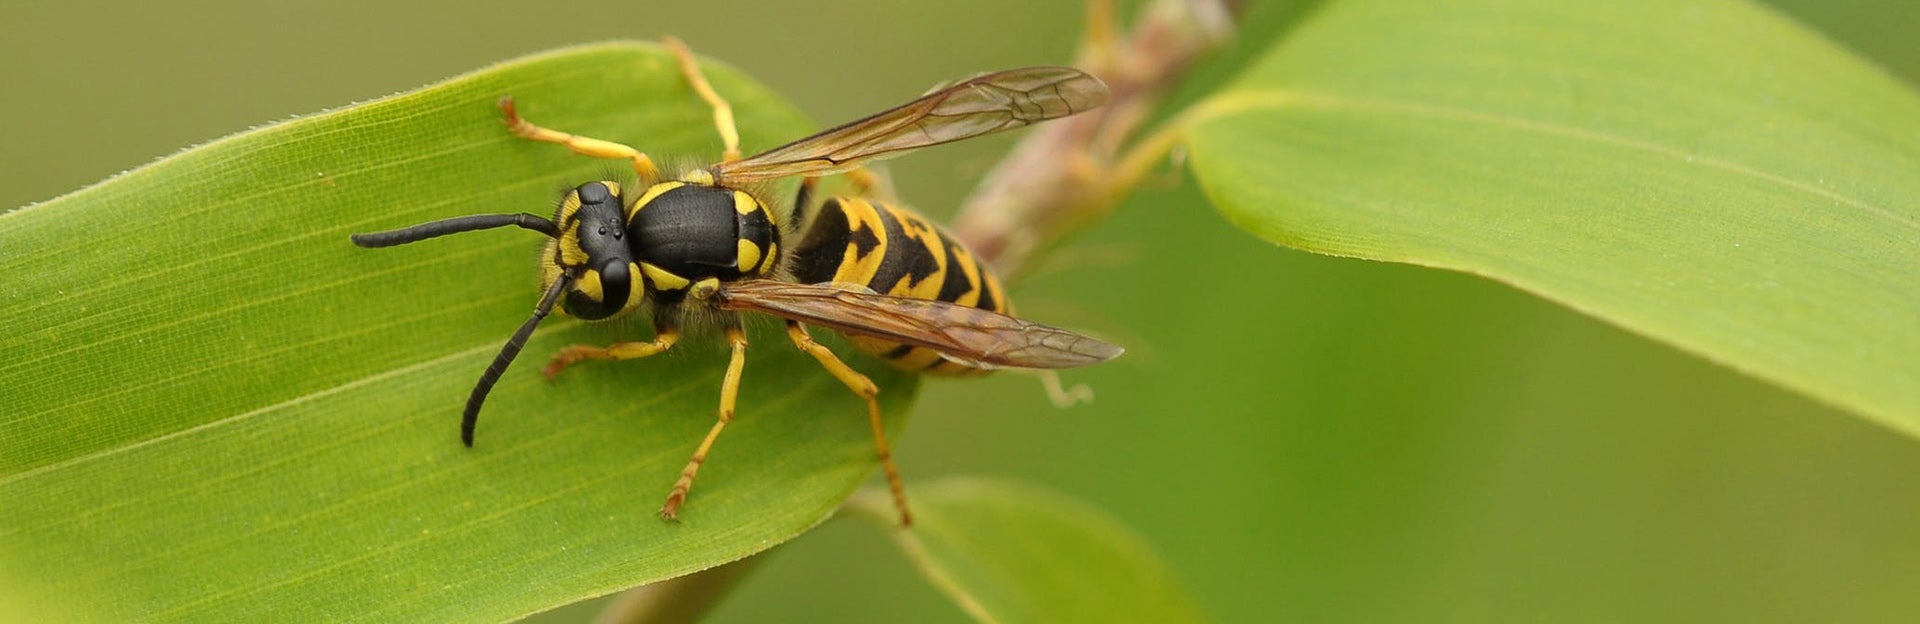 Wasp on leaf close-up, source: pexels.com